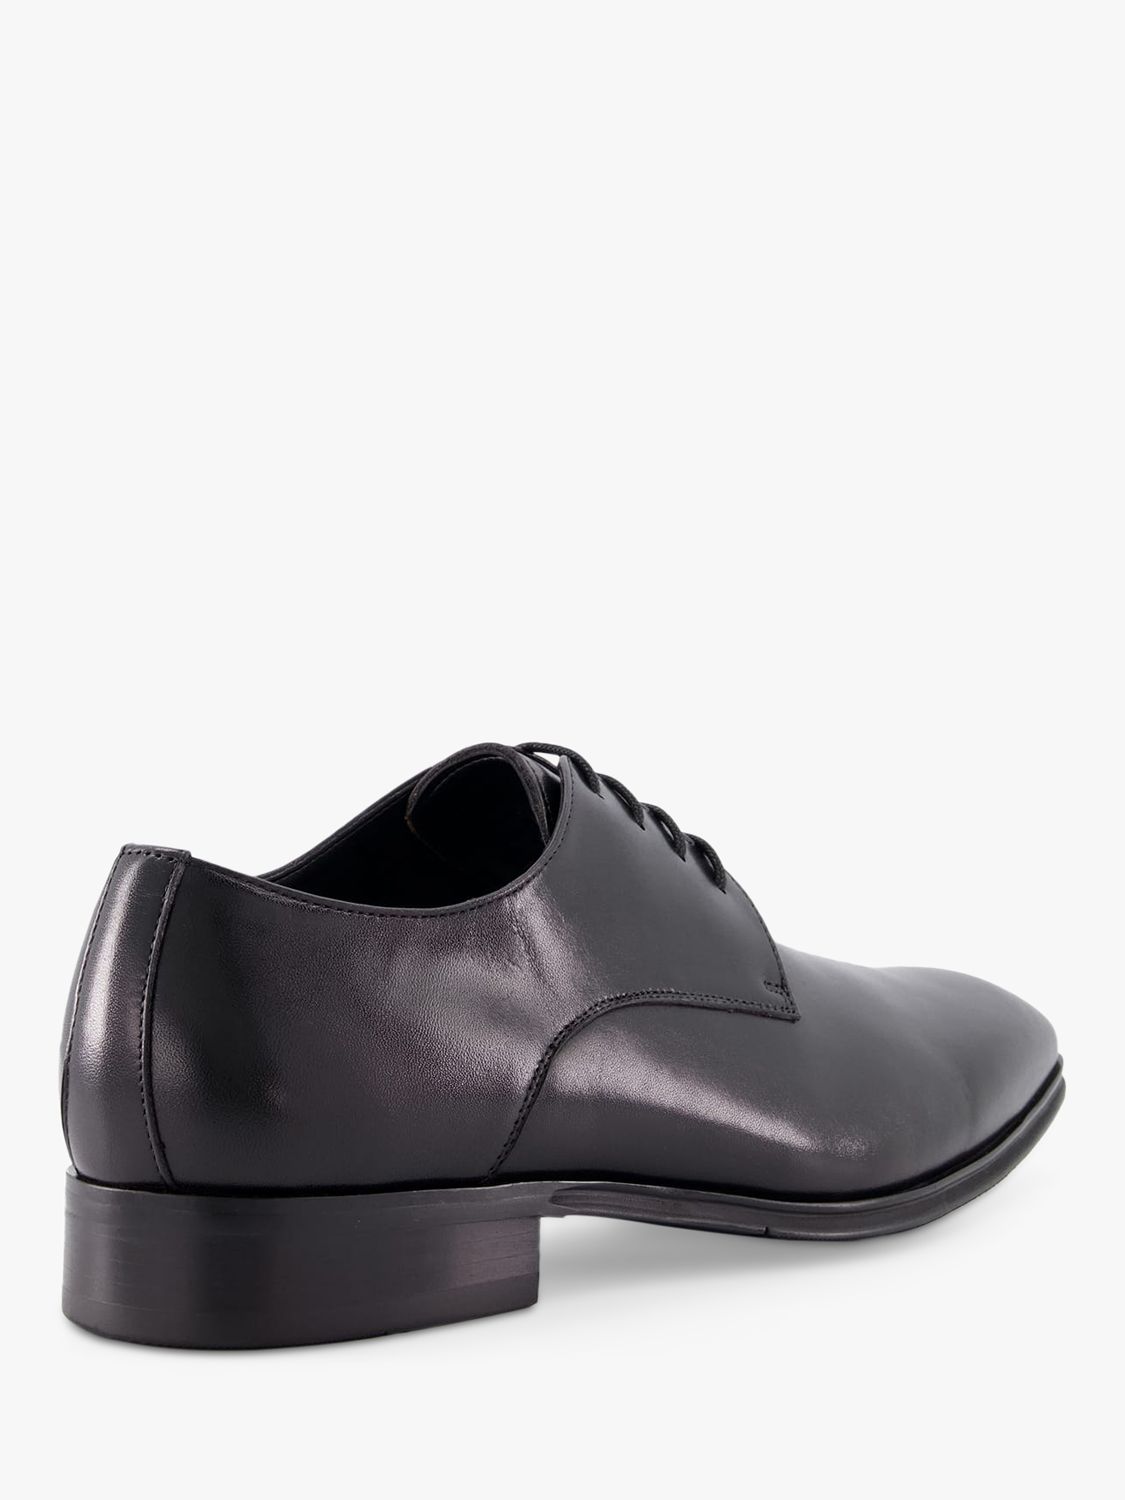 Dune Satchel Leather Lace Up Shoes, Black, 6